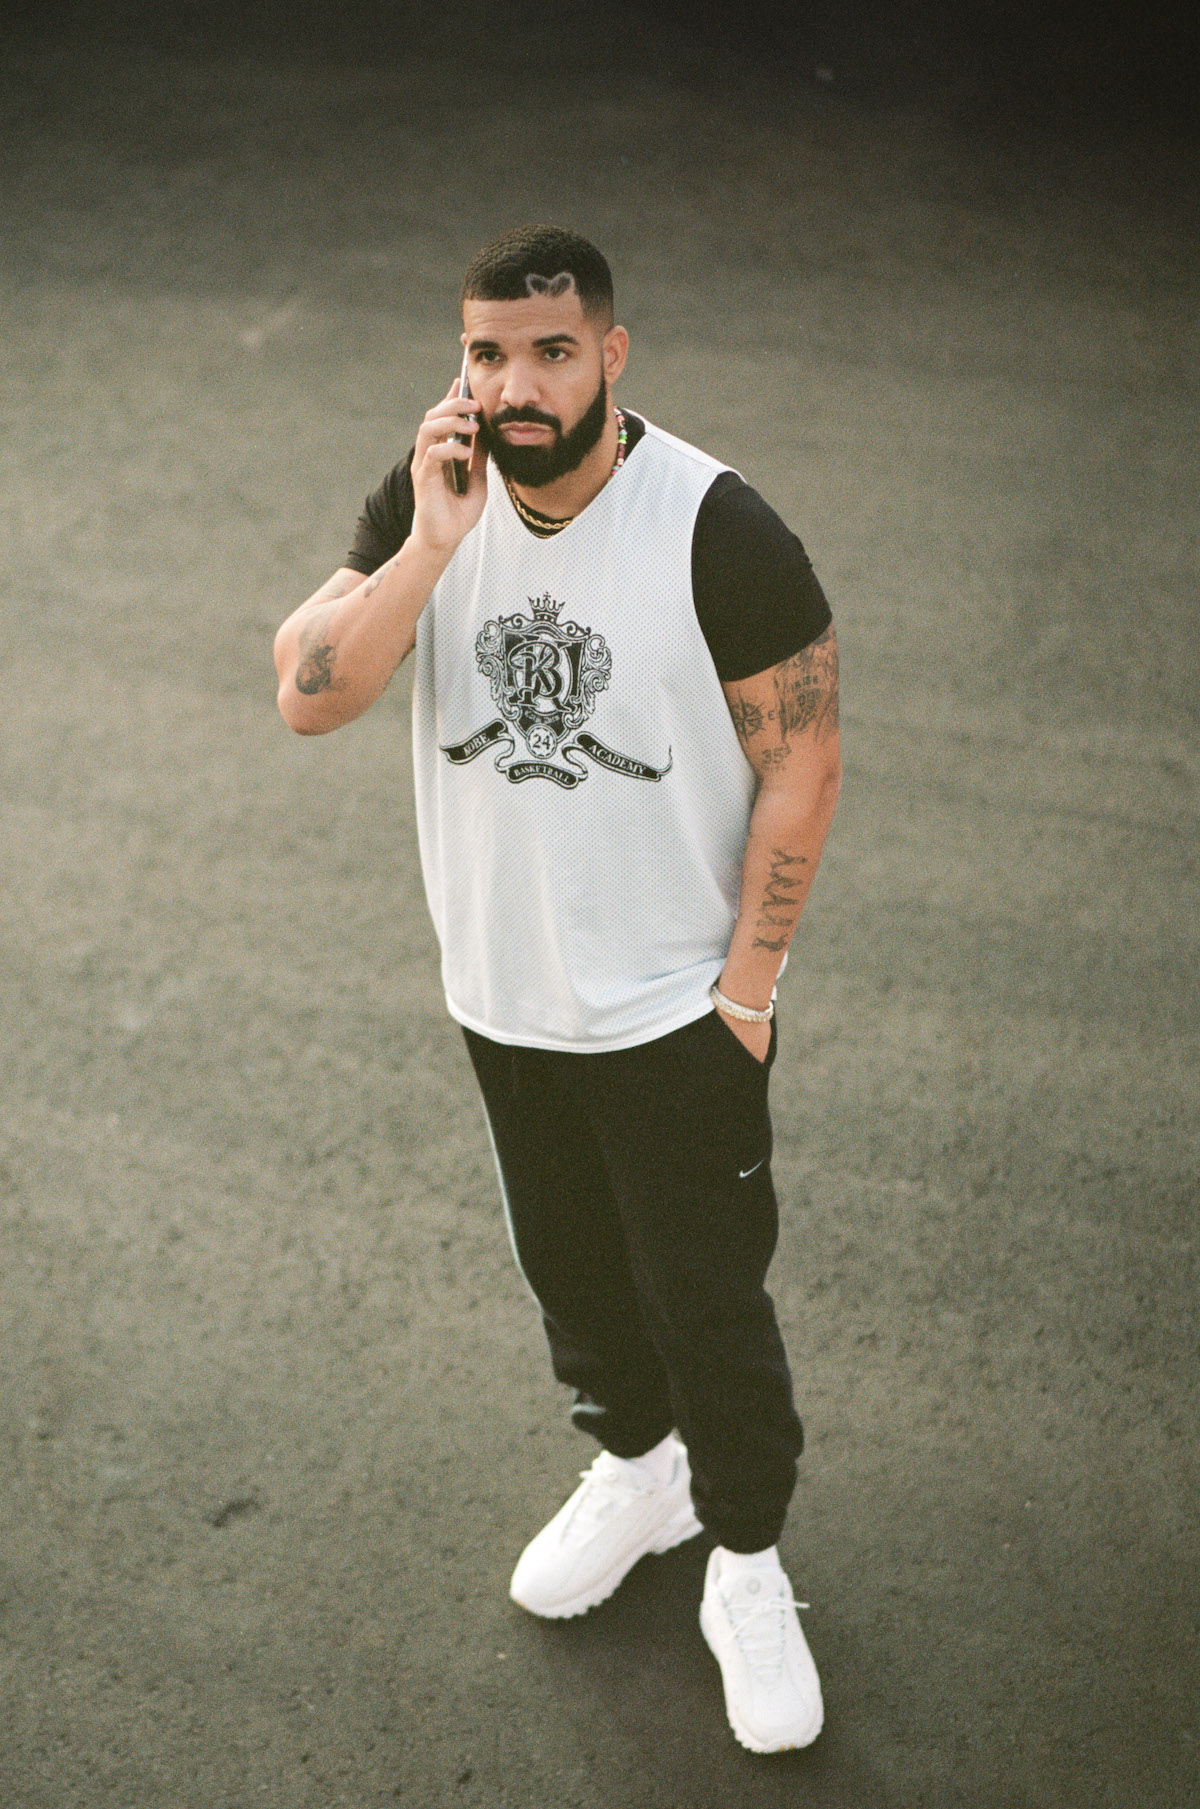 Drake © Universal Music Group